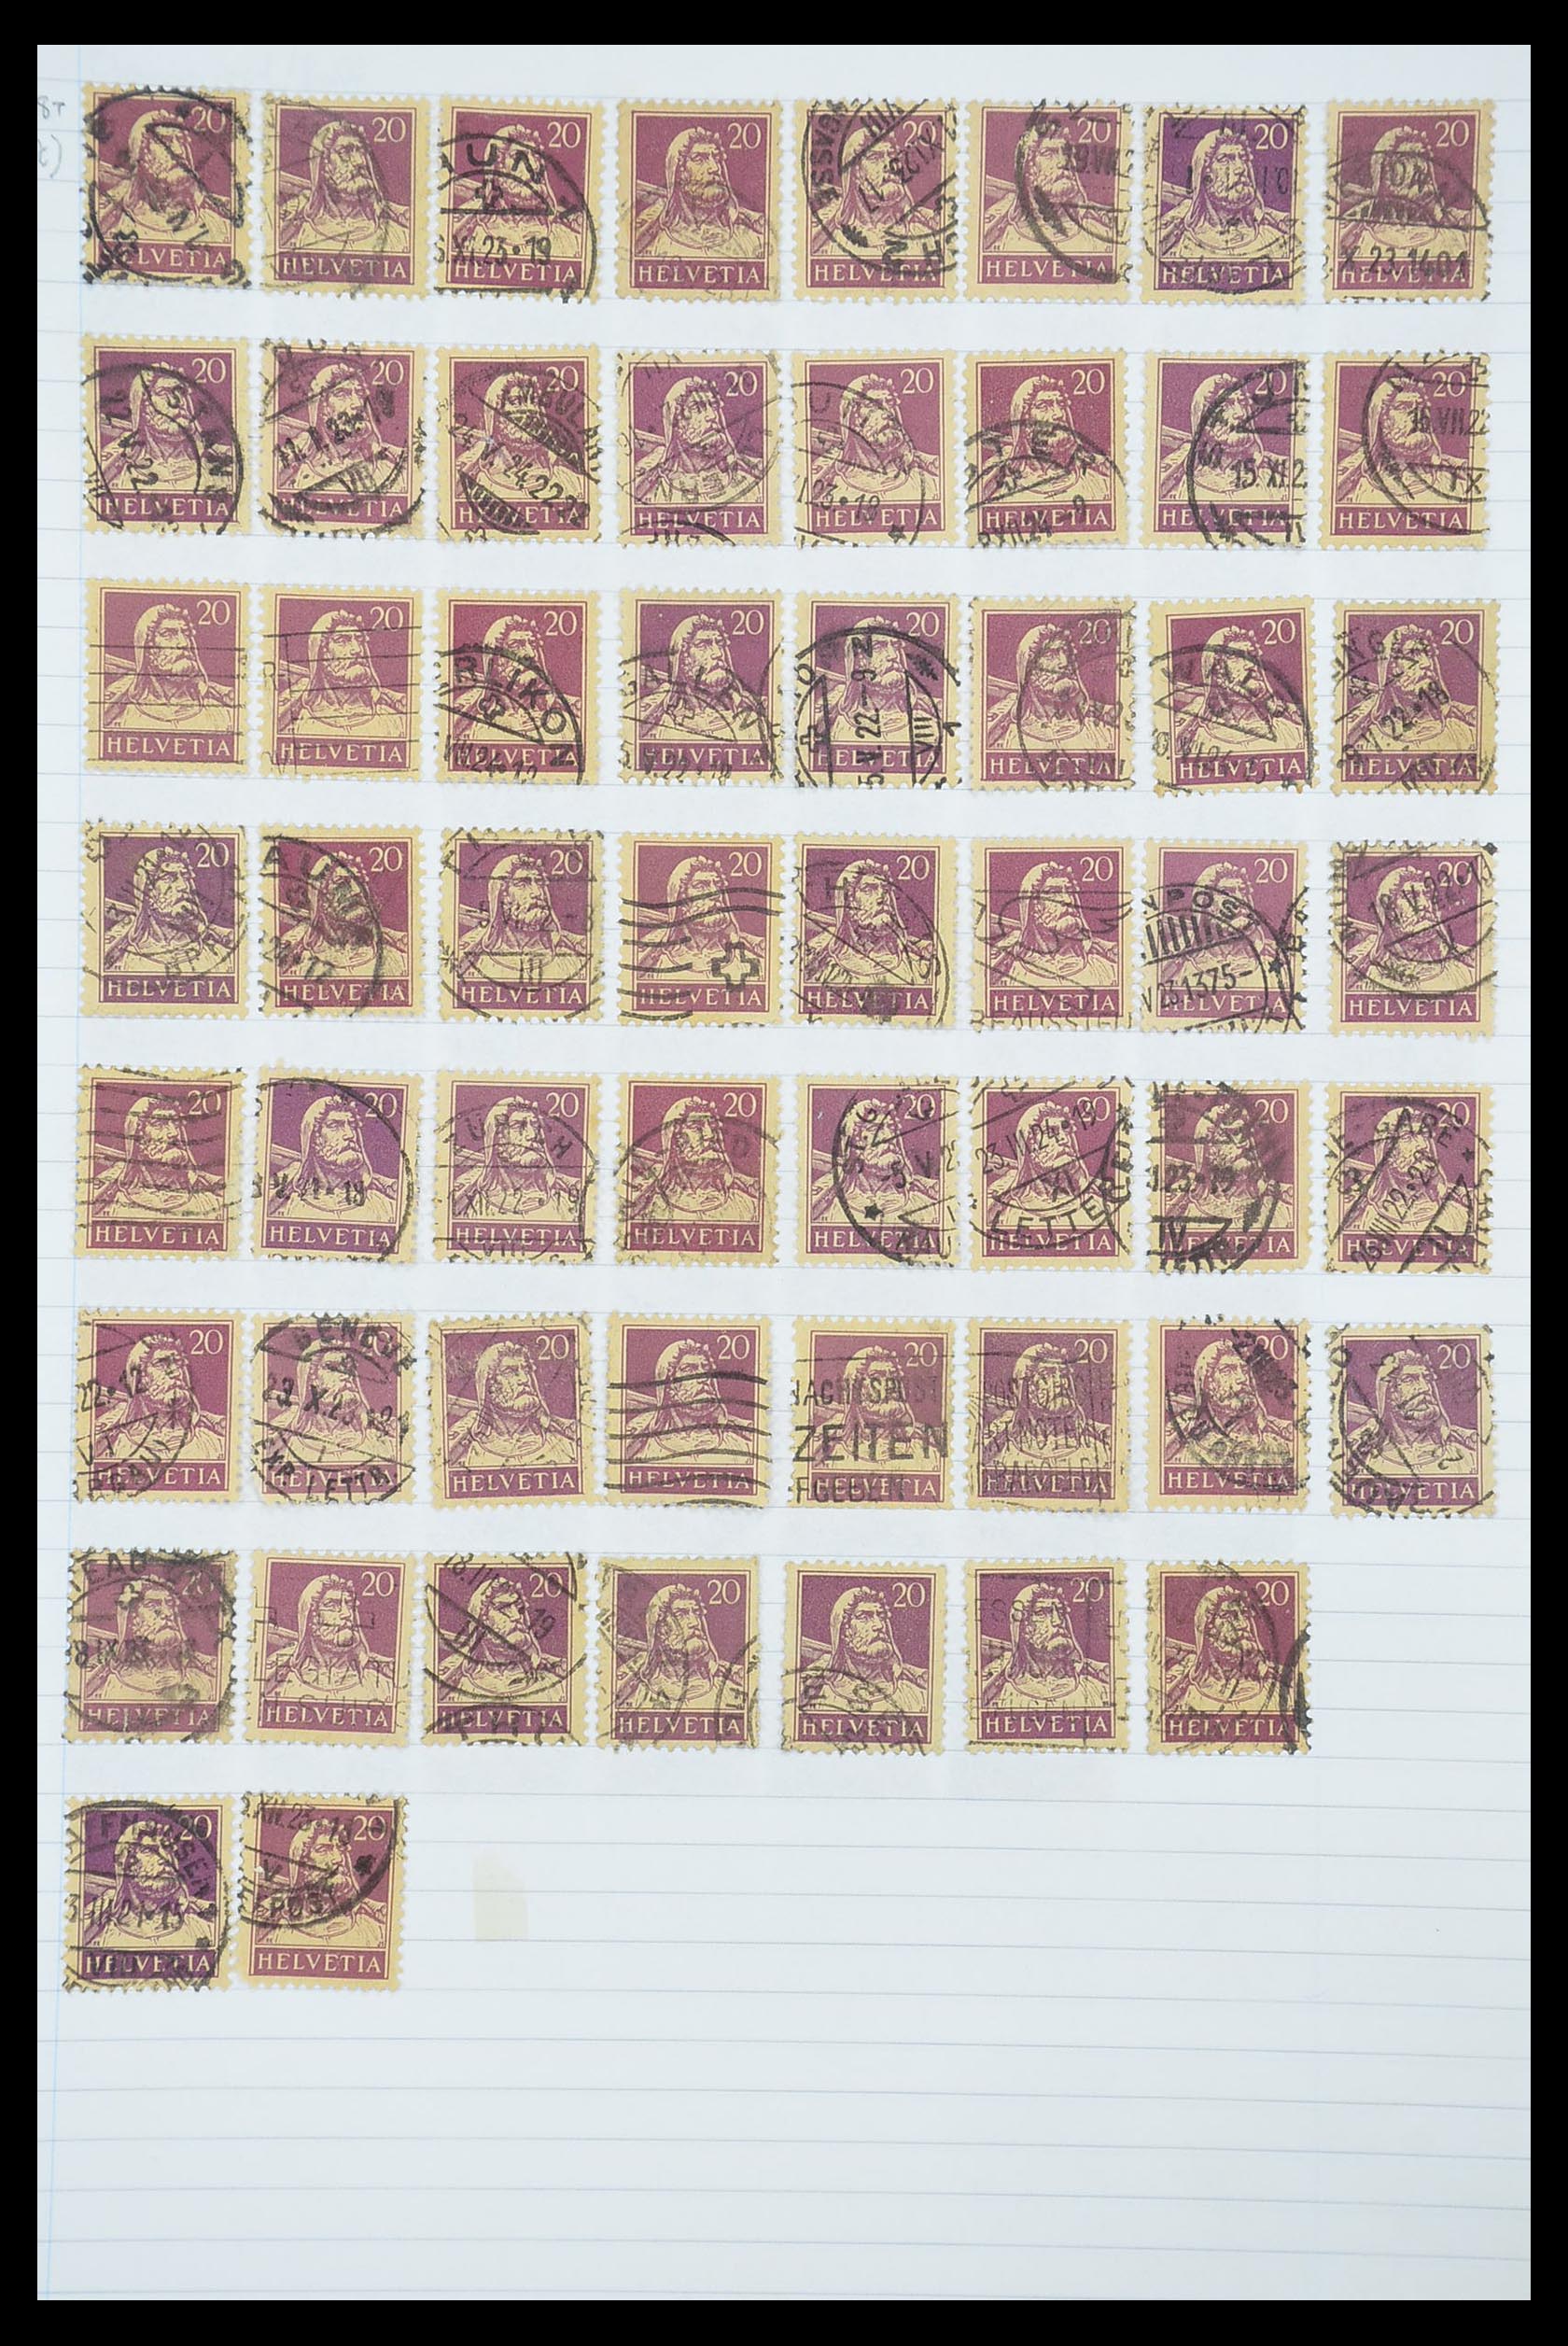 33926 384 - Postzegelverzameling 33926 Zwitserland uitzoekpartij 1850-1997.